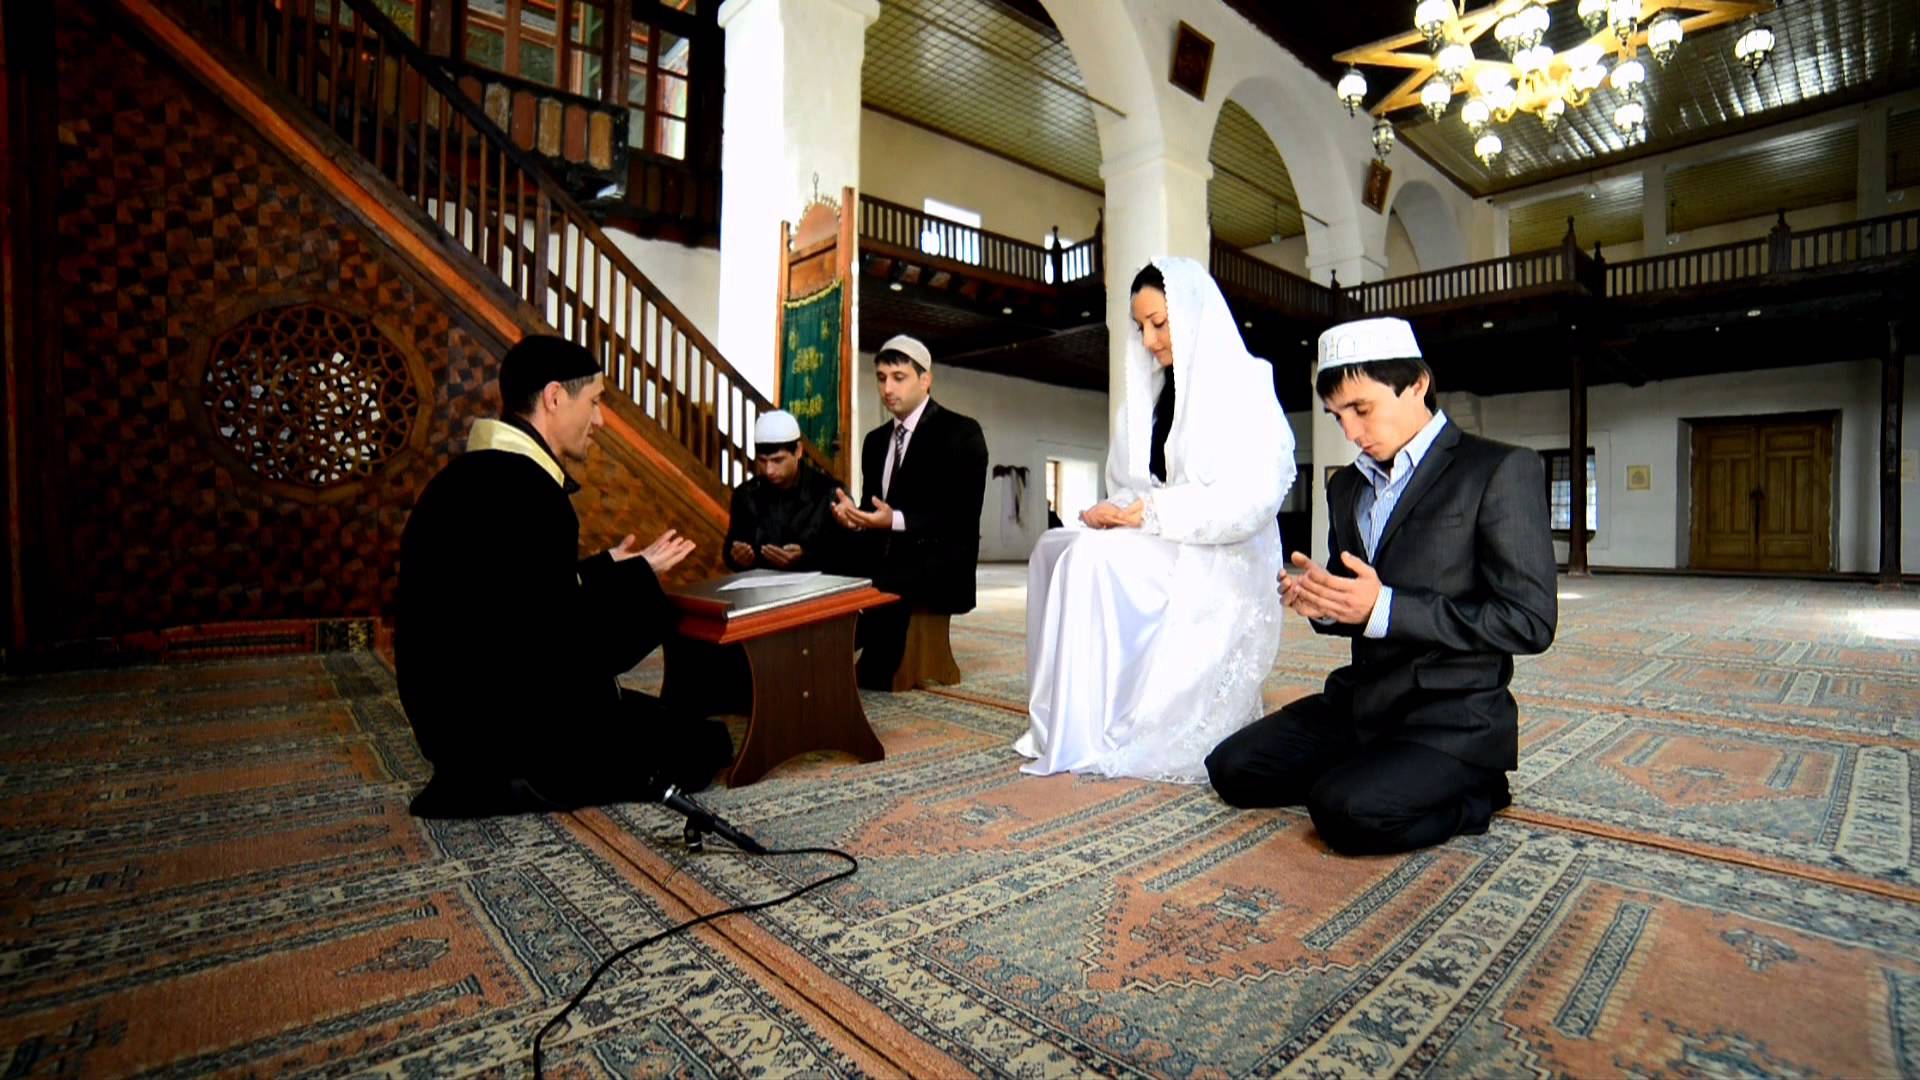 Мусульманский регистрации. Свадьба Никях в Турции мечеть. Традиционная мусульманская свадьба. Свадьба в Исламе. Брак с мусульманином.